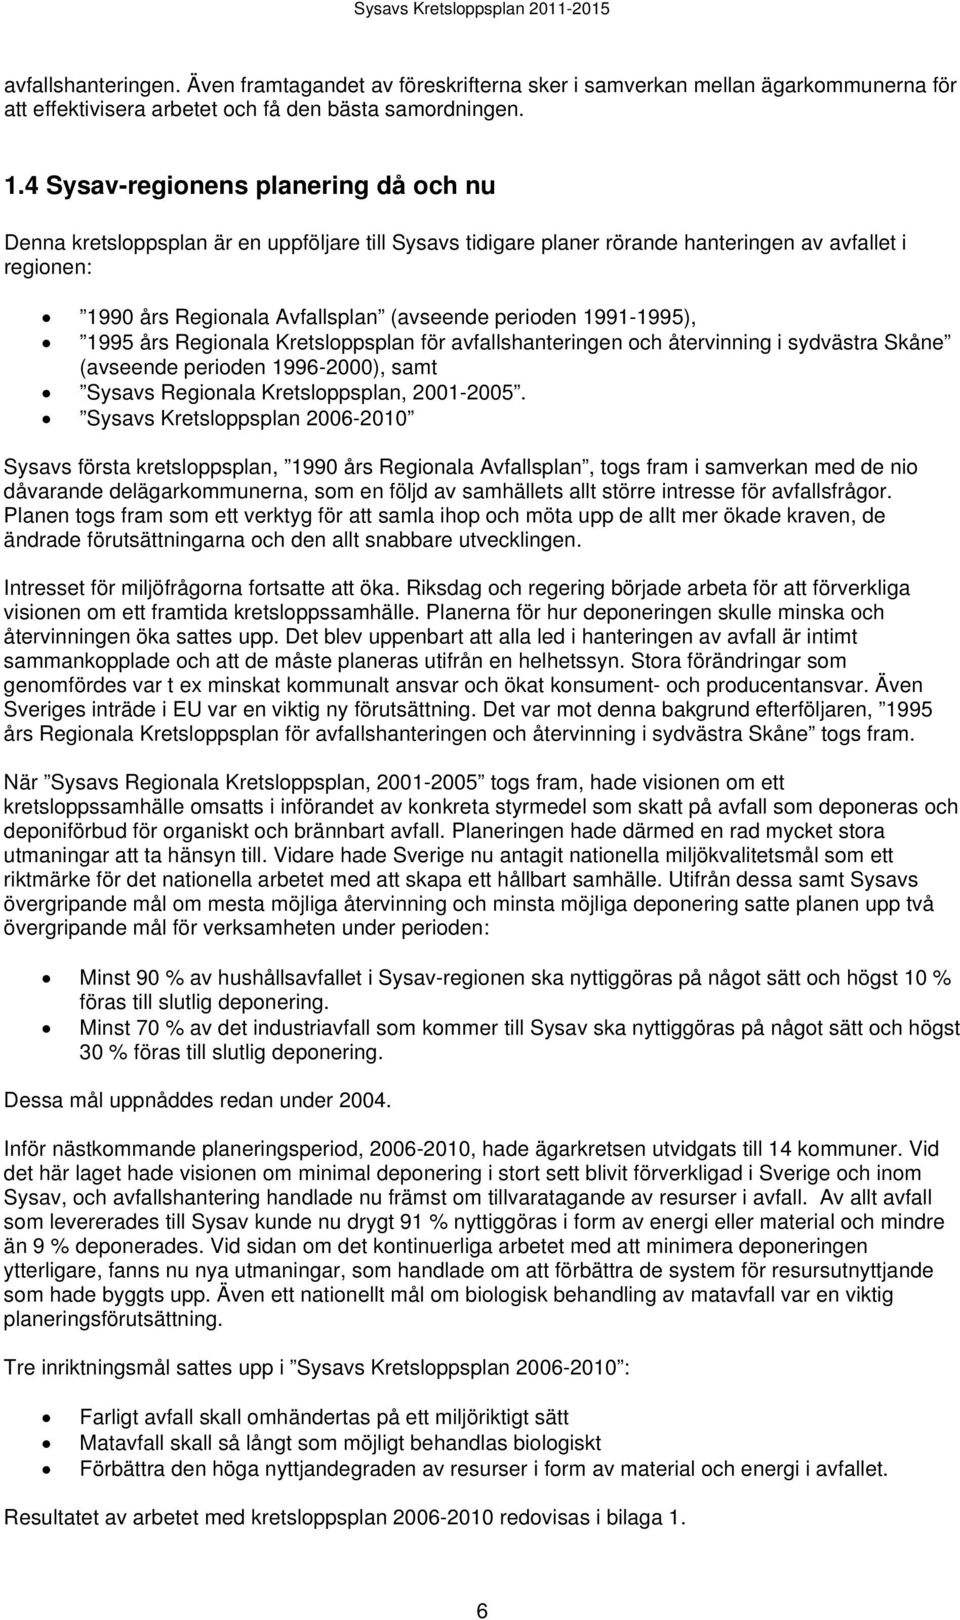 1991-1995), 1995 års Regionala Kretsloppsplan för avfallshanteringen och återvinning i sydvästra Skåne (avseende perioden 1996-2000), samt Sysavs Regionala Kretsloppsplan, 2001-2005.